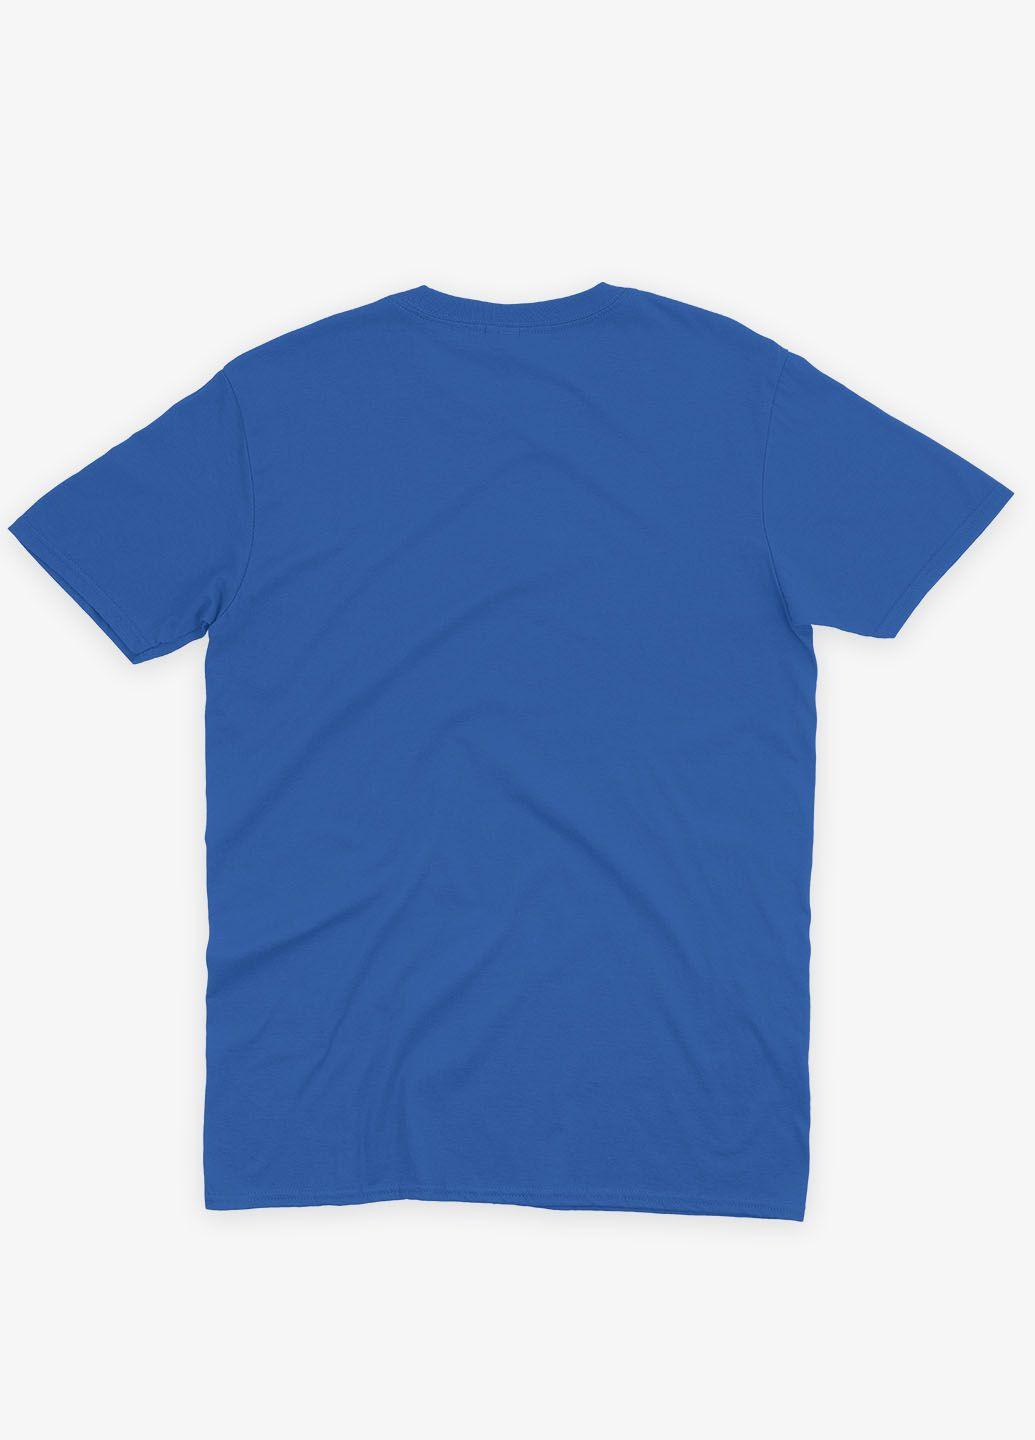 Синяя демисезонная футболка для мальчика с принтом супергероя - черная пантера (ts001-1-brr-006-027-001-b) Modno